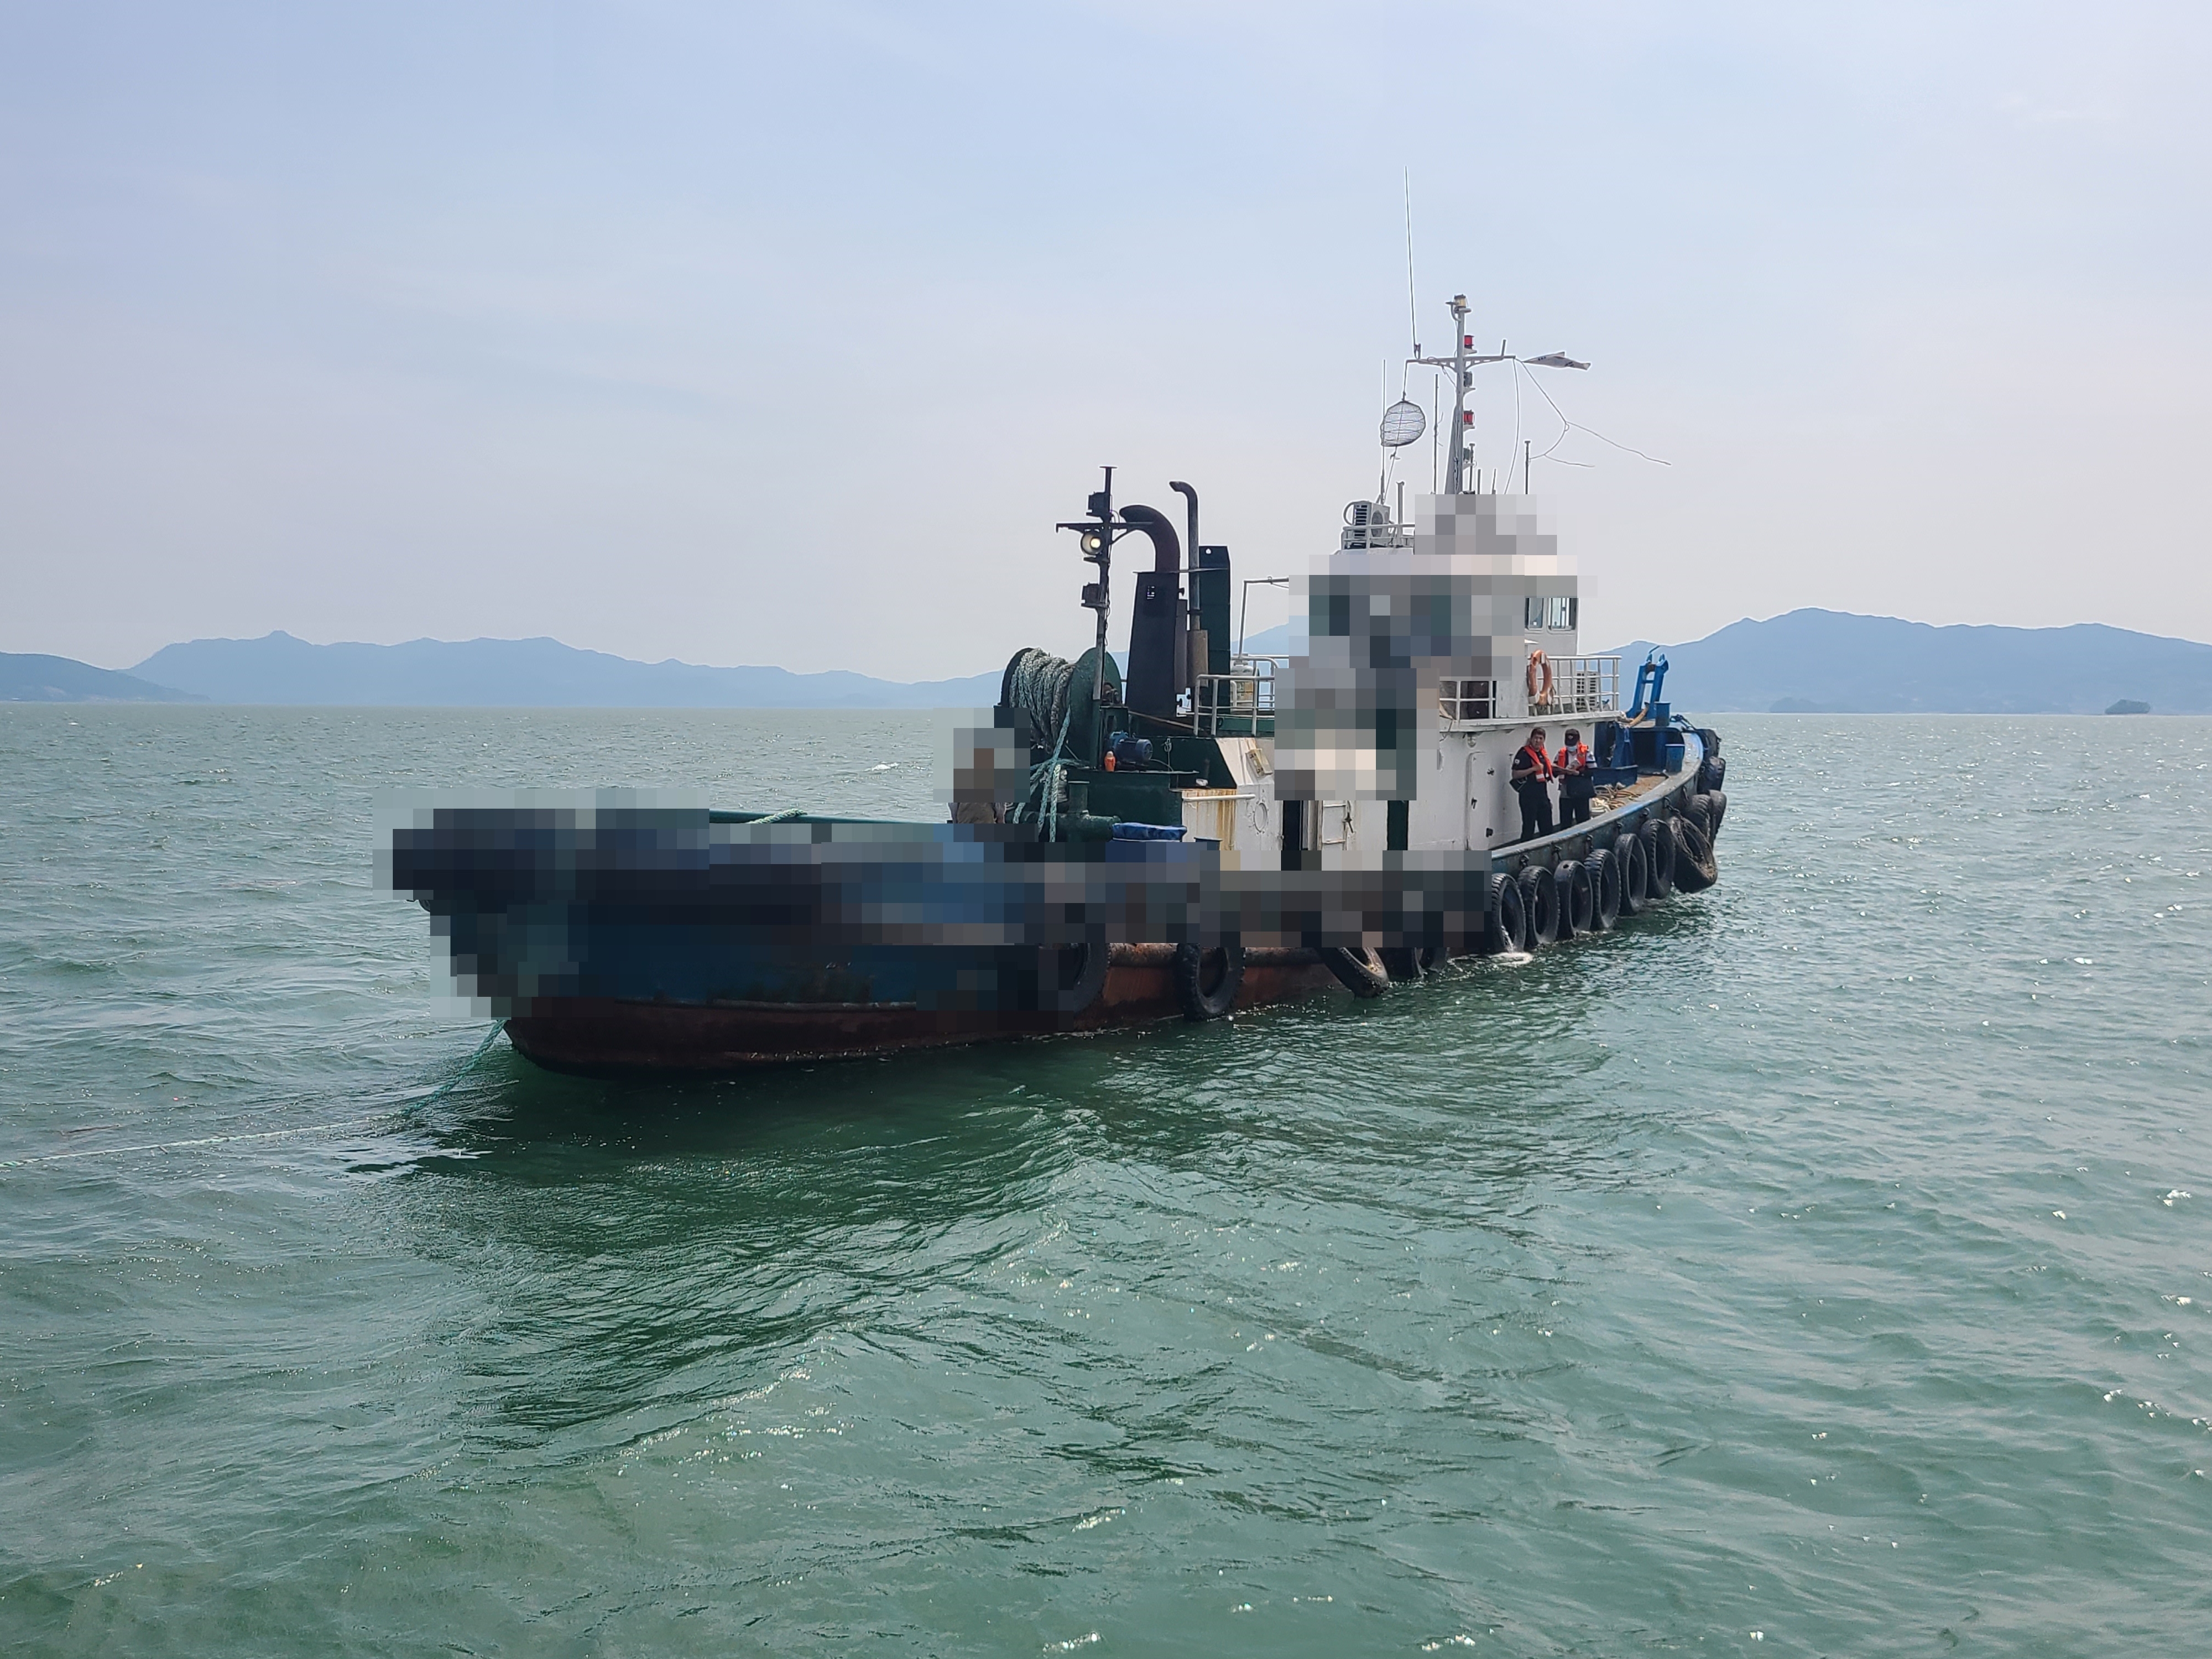 경남 사천해양경찰서 소속 경찰관이 음주운항 선박을 단속하고 있다. 사천해양경찰서 제공